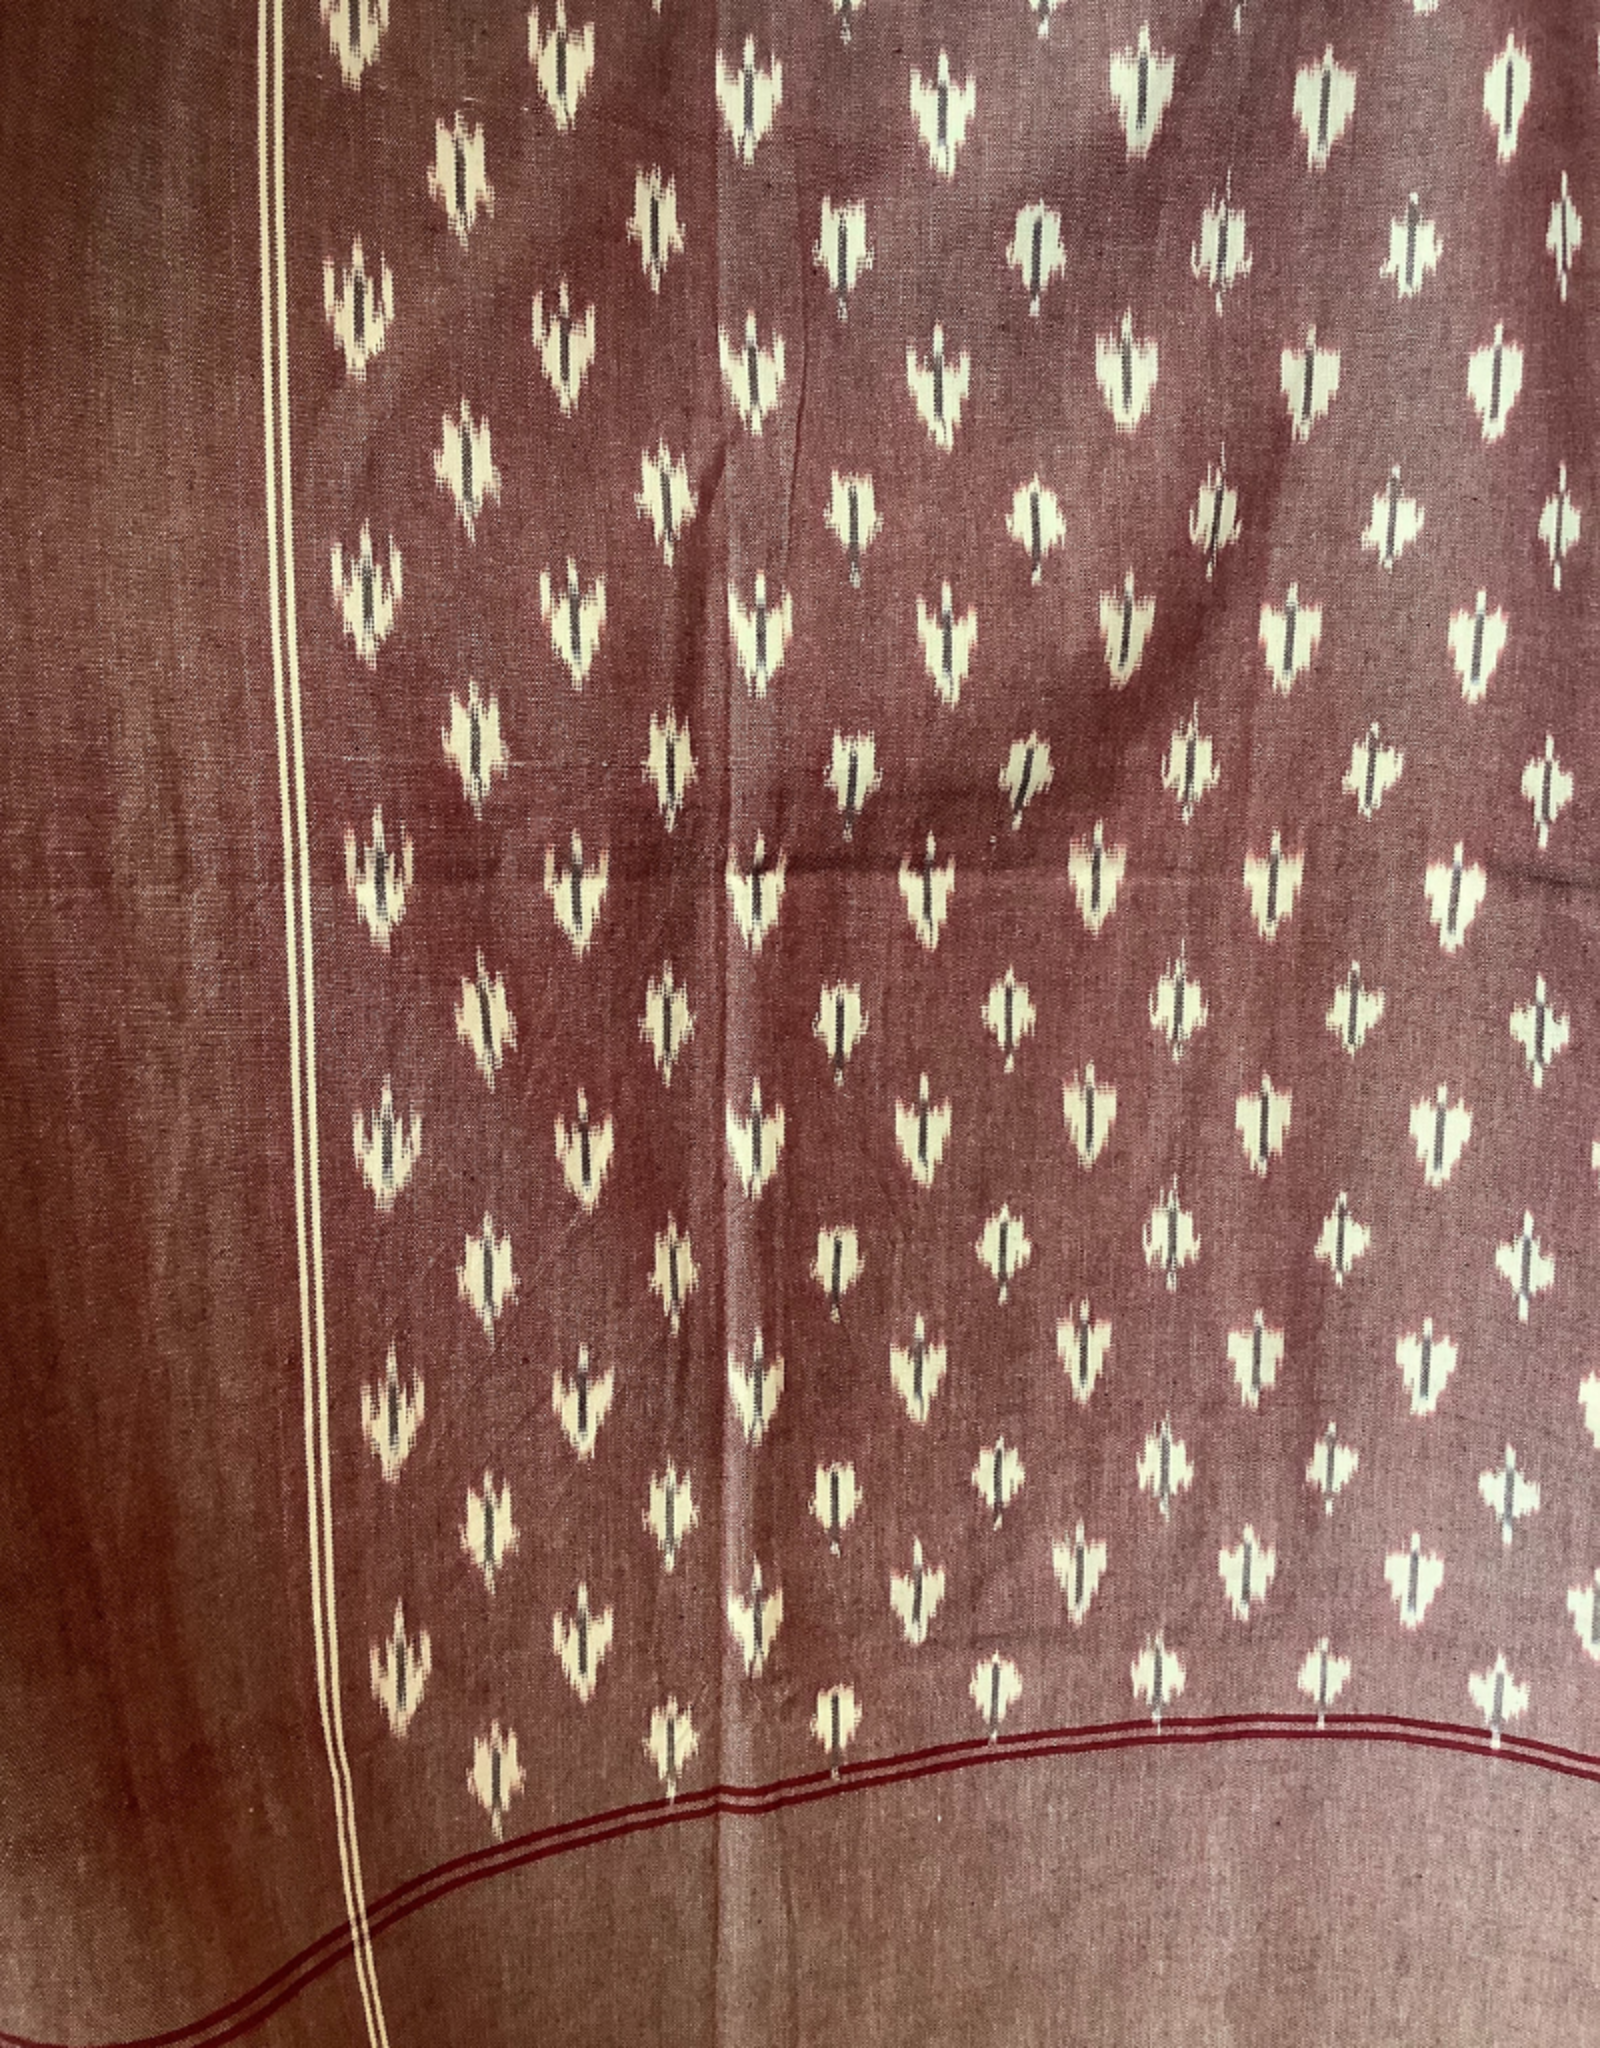 India Tablecloth Cranberry Ikat - India